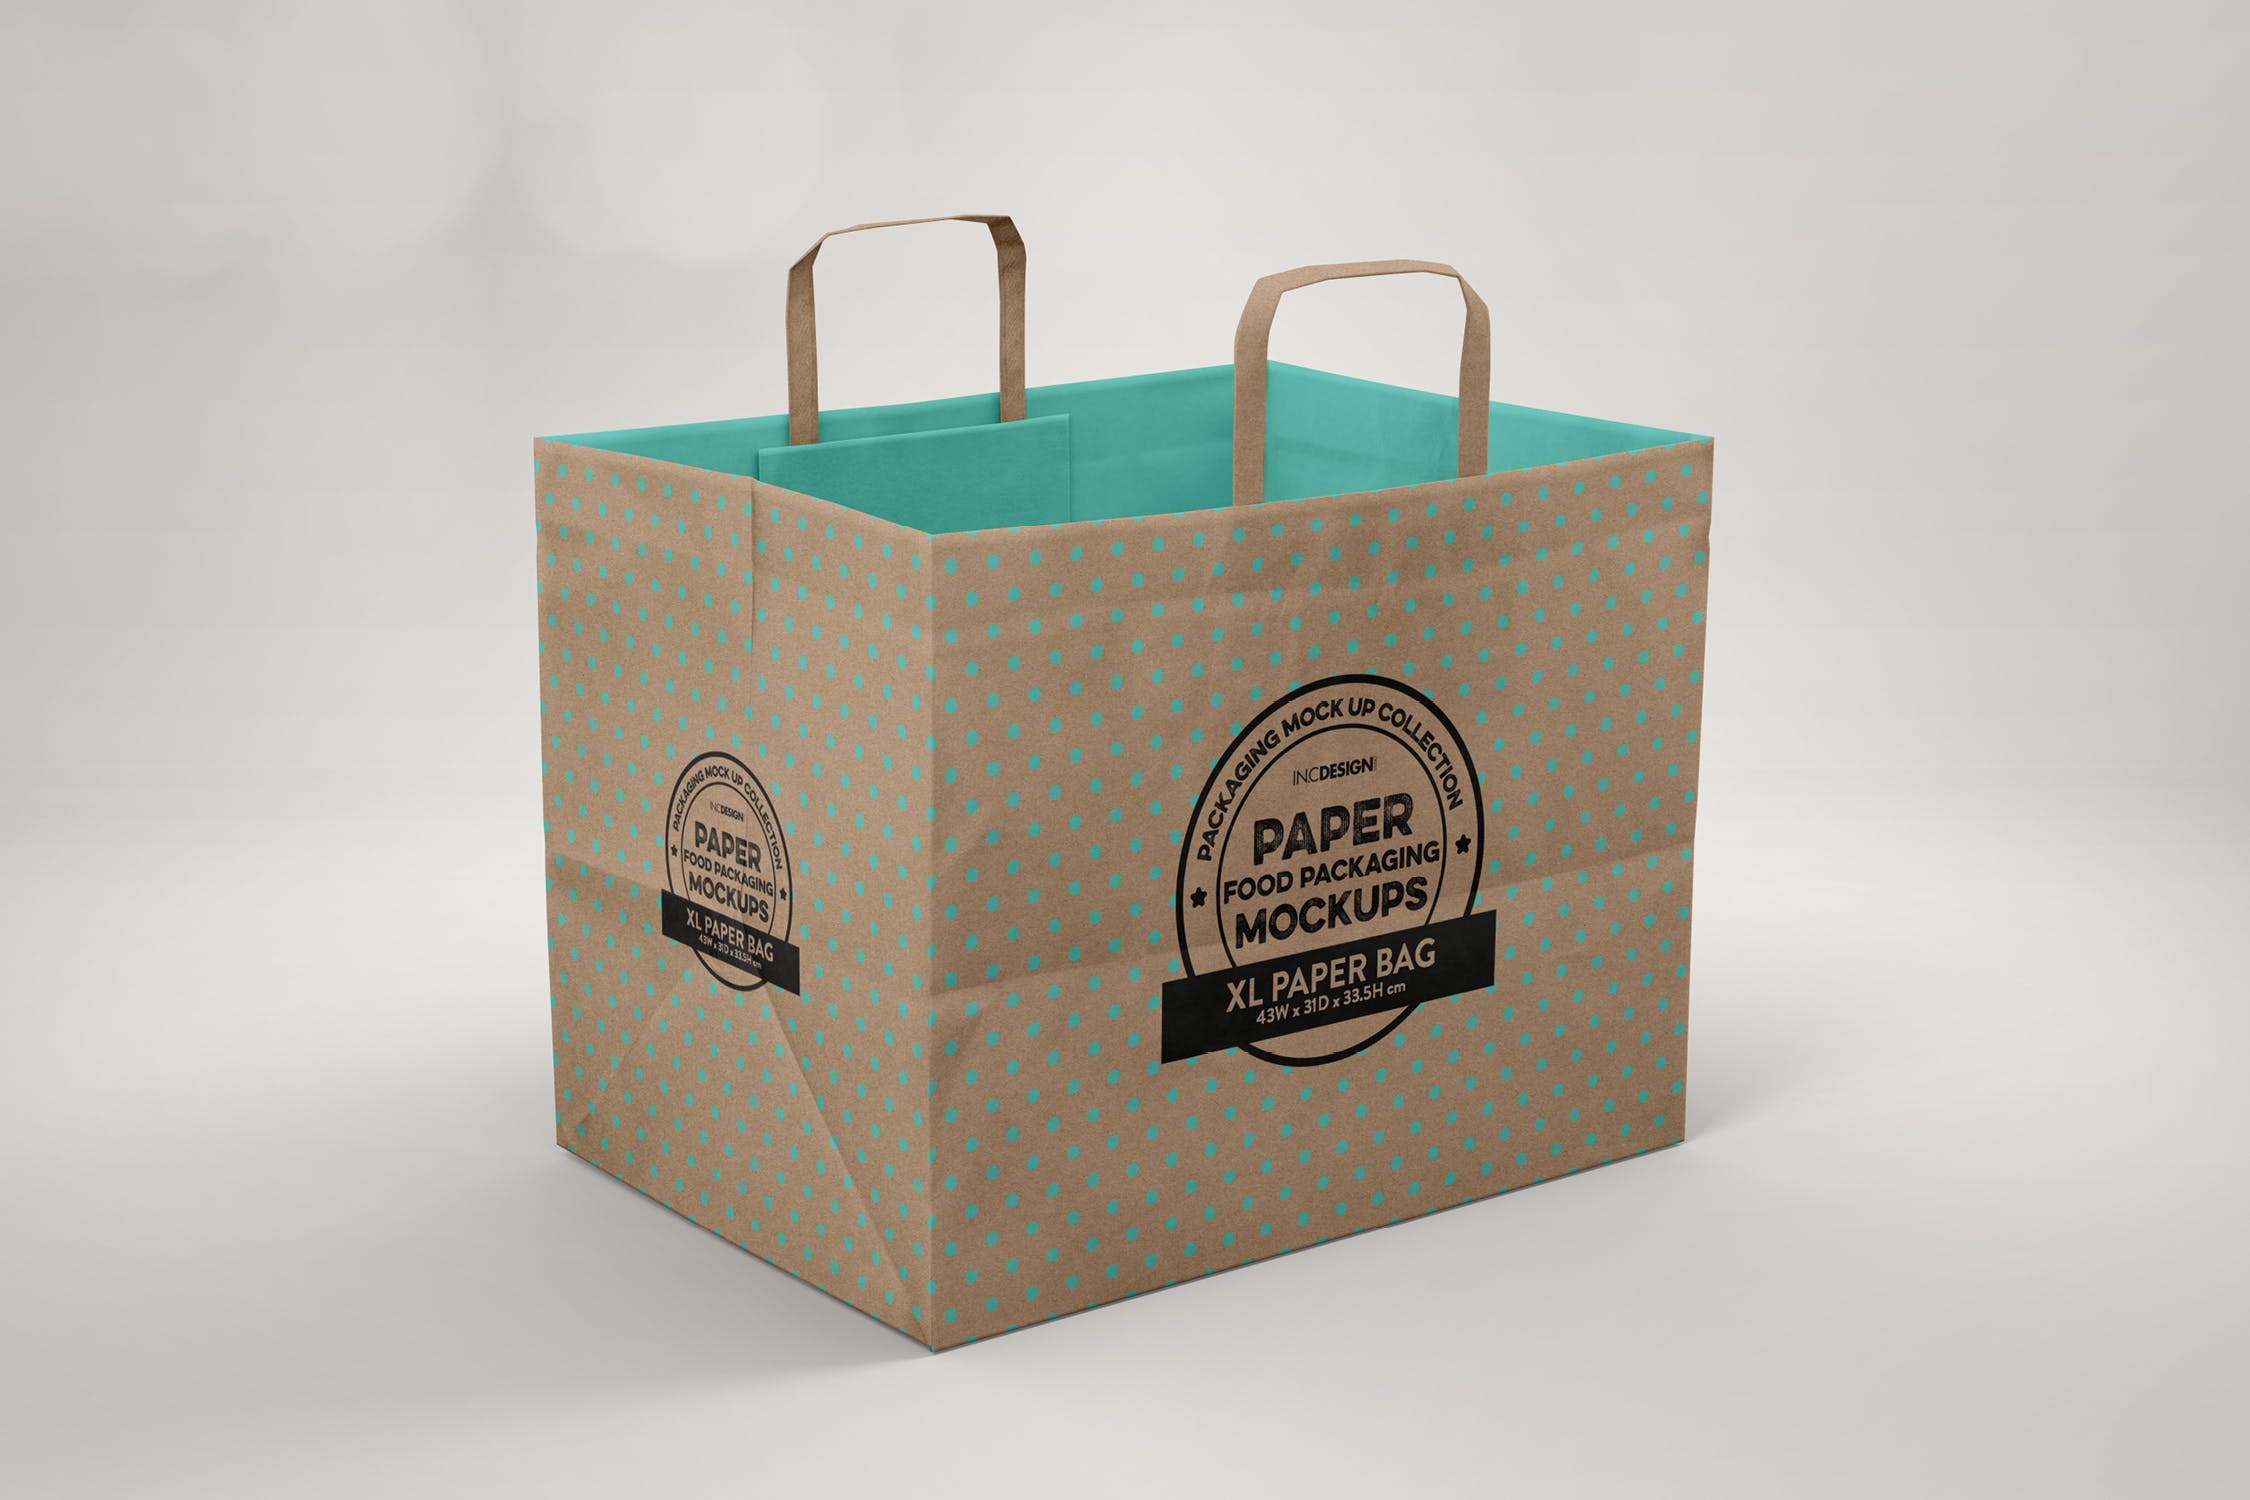 加大型购物纸袋设计图蚂蚁素材精选模板 XL Paper Bags with Flat Handles Mockup插图(1)